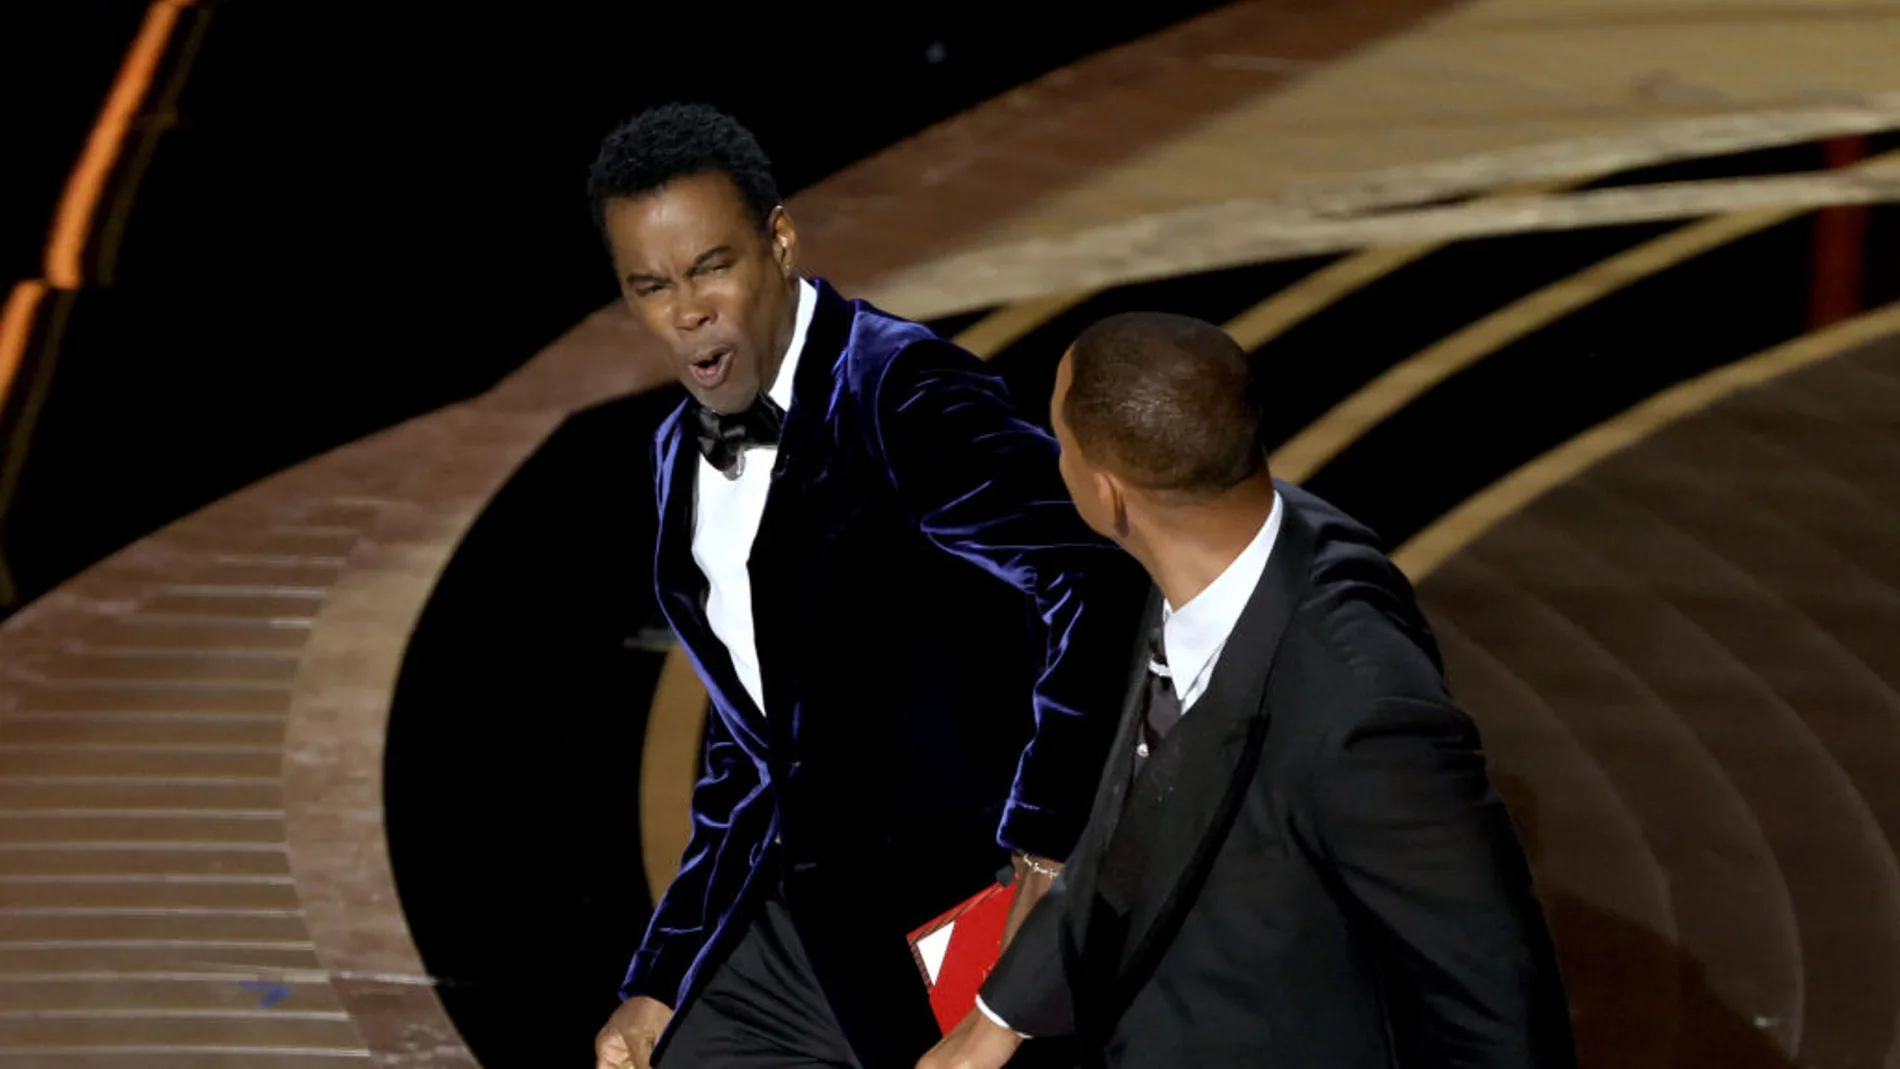 El gesto de Chris Rock tras recibir una bofetada de Will Smith en la ceremonia de los Oscar